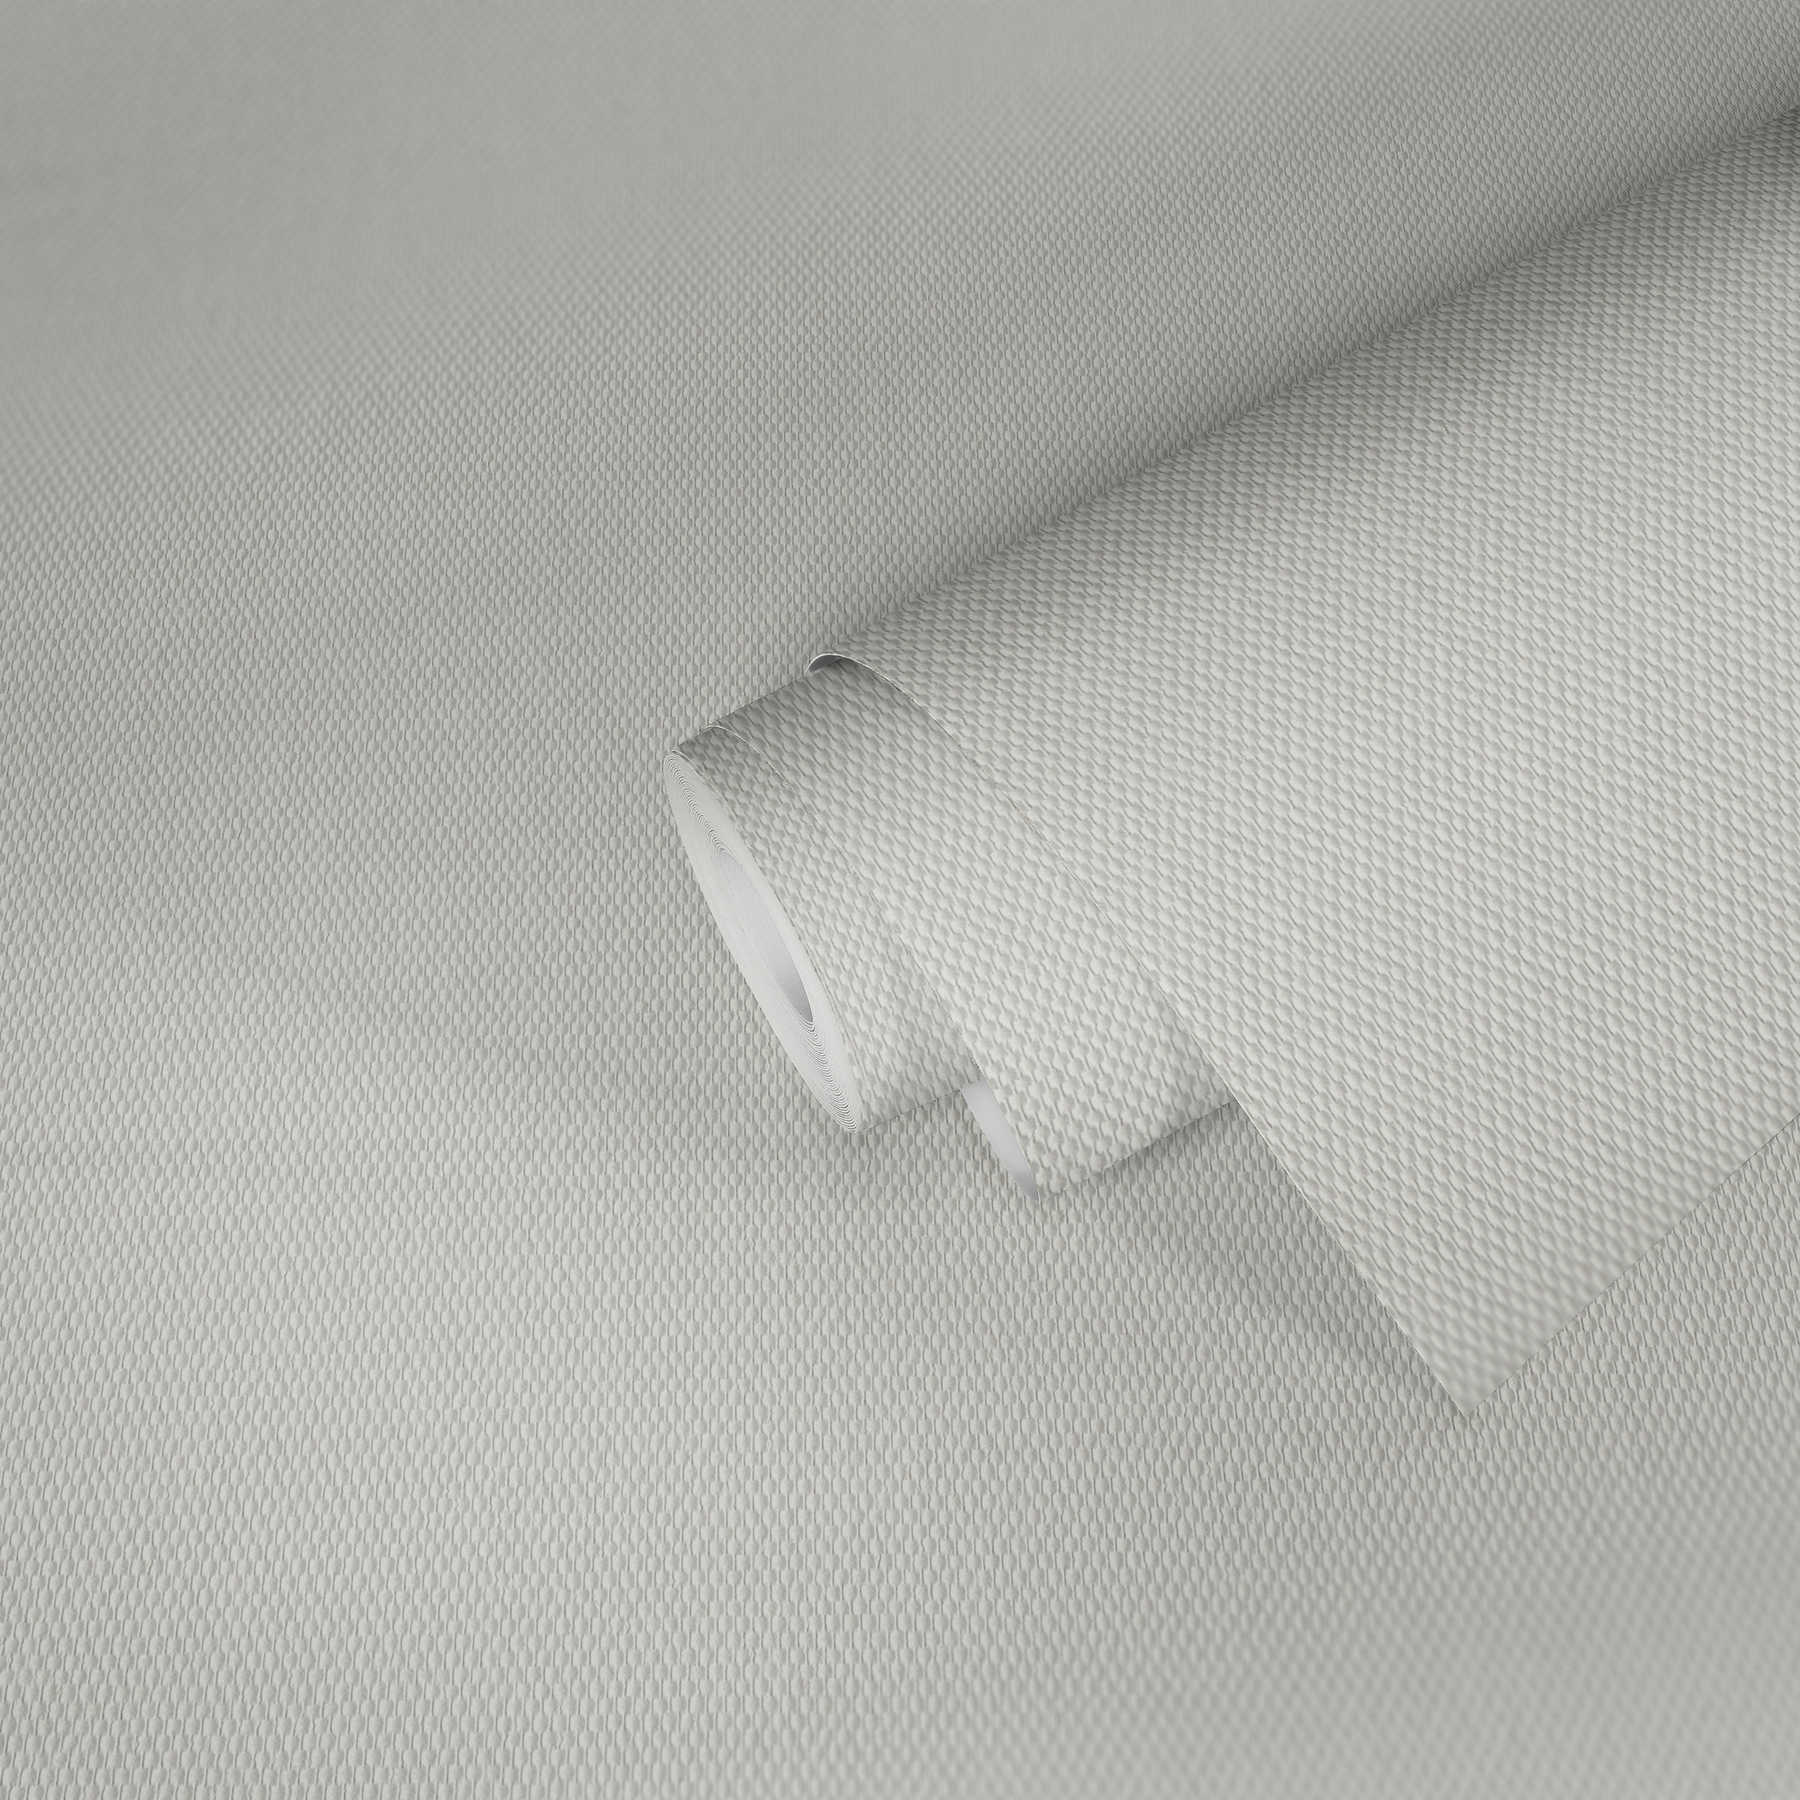             papier peint en papier en fibres de verre avec double chaîne moyenne - prépeint en blanc pigmenté
        